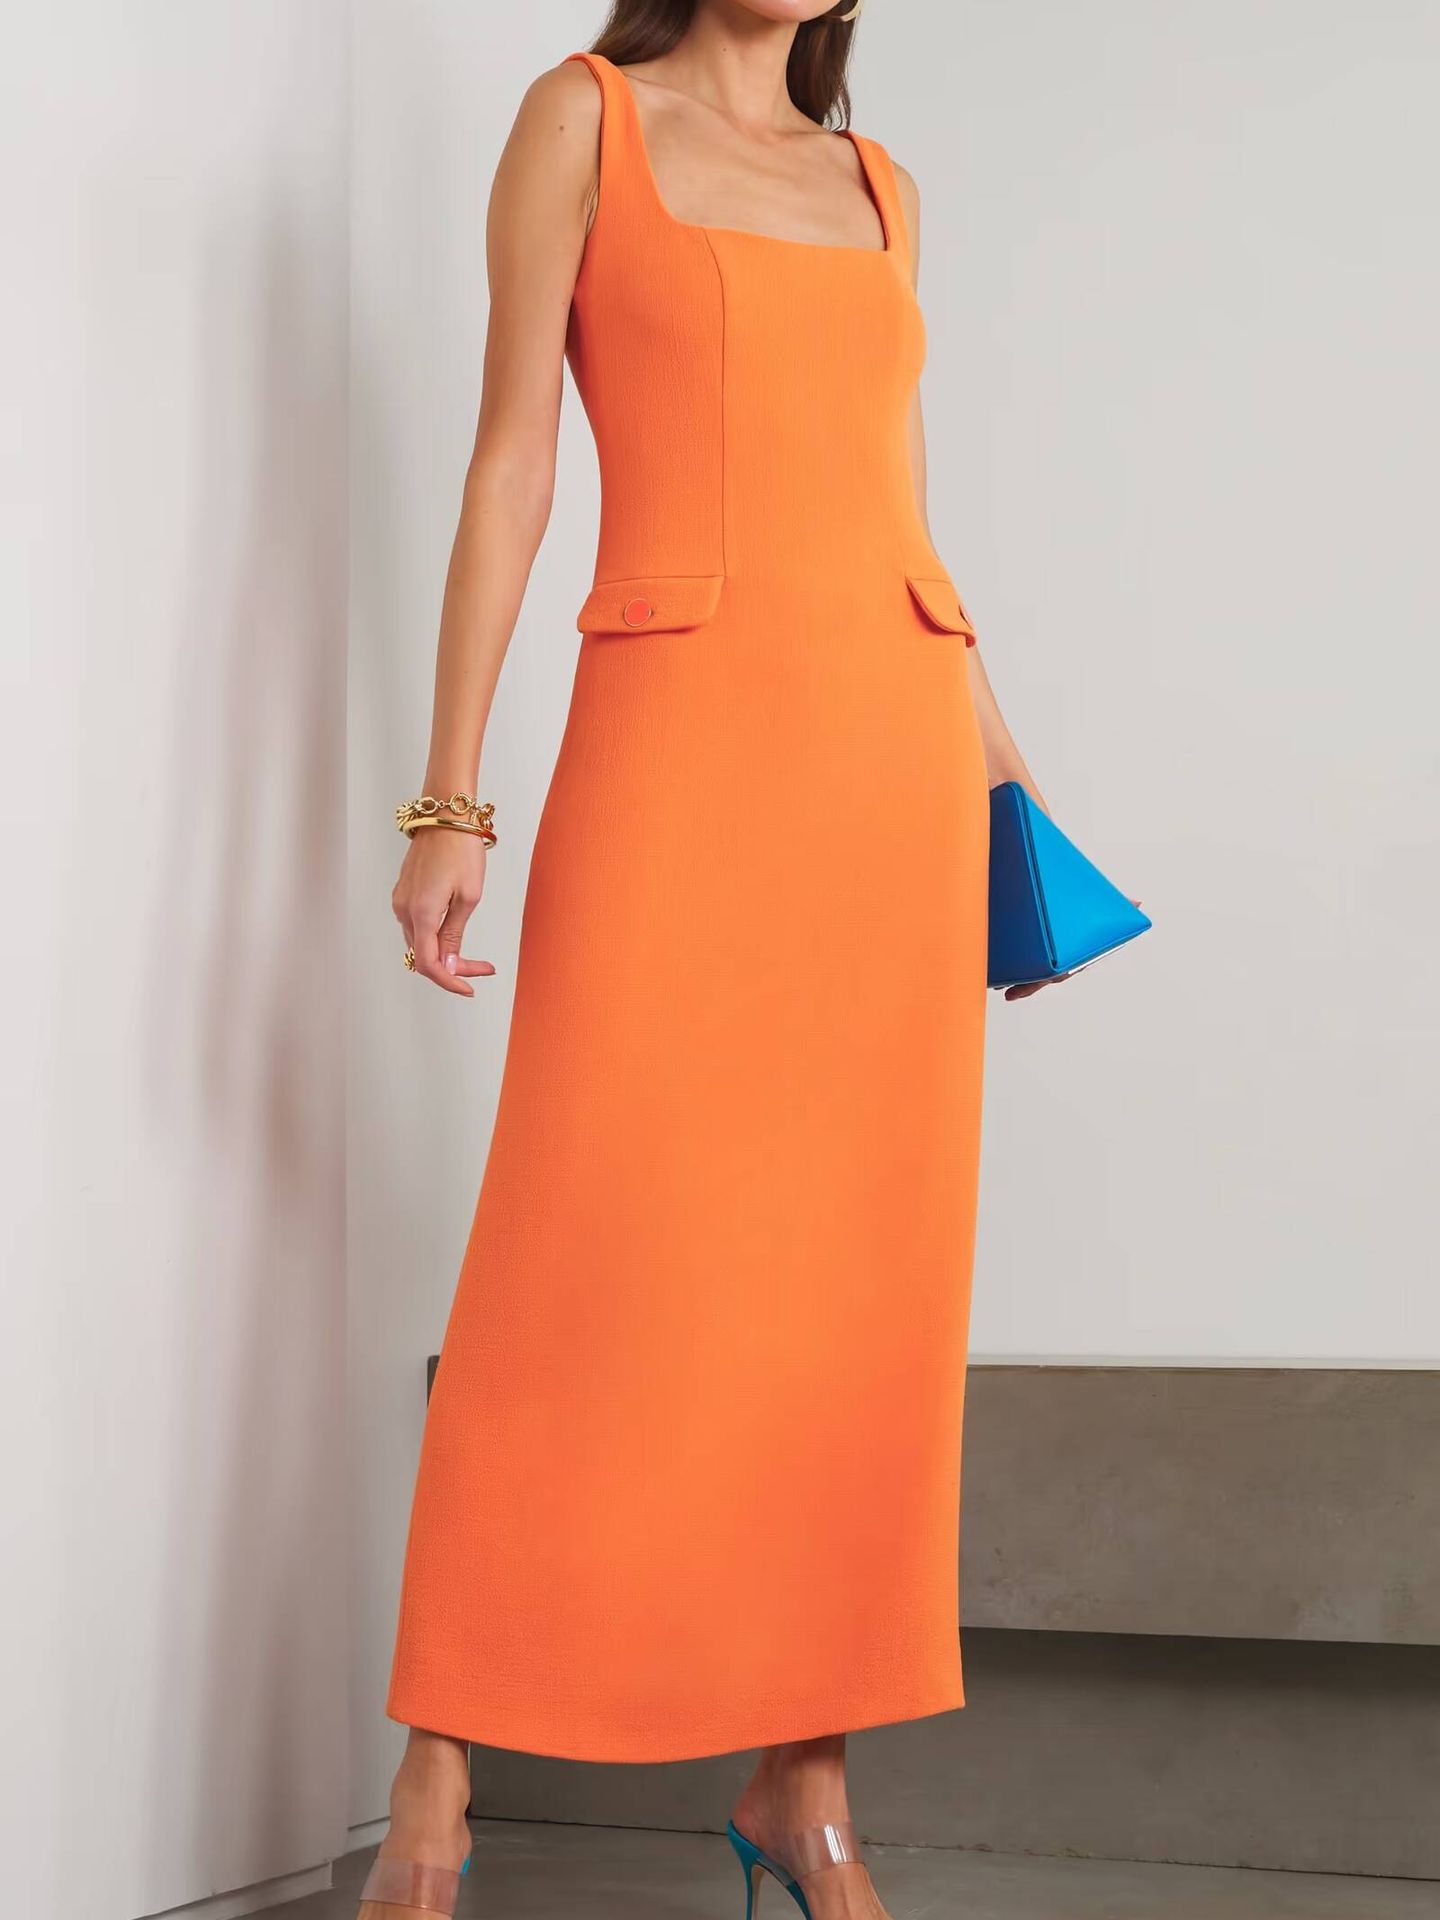 El vestido naranja de Rowen Rose que tiene Eva Longoria. (Cortesía)